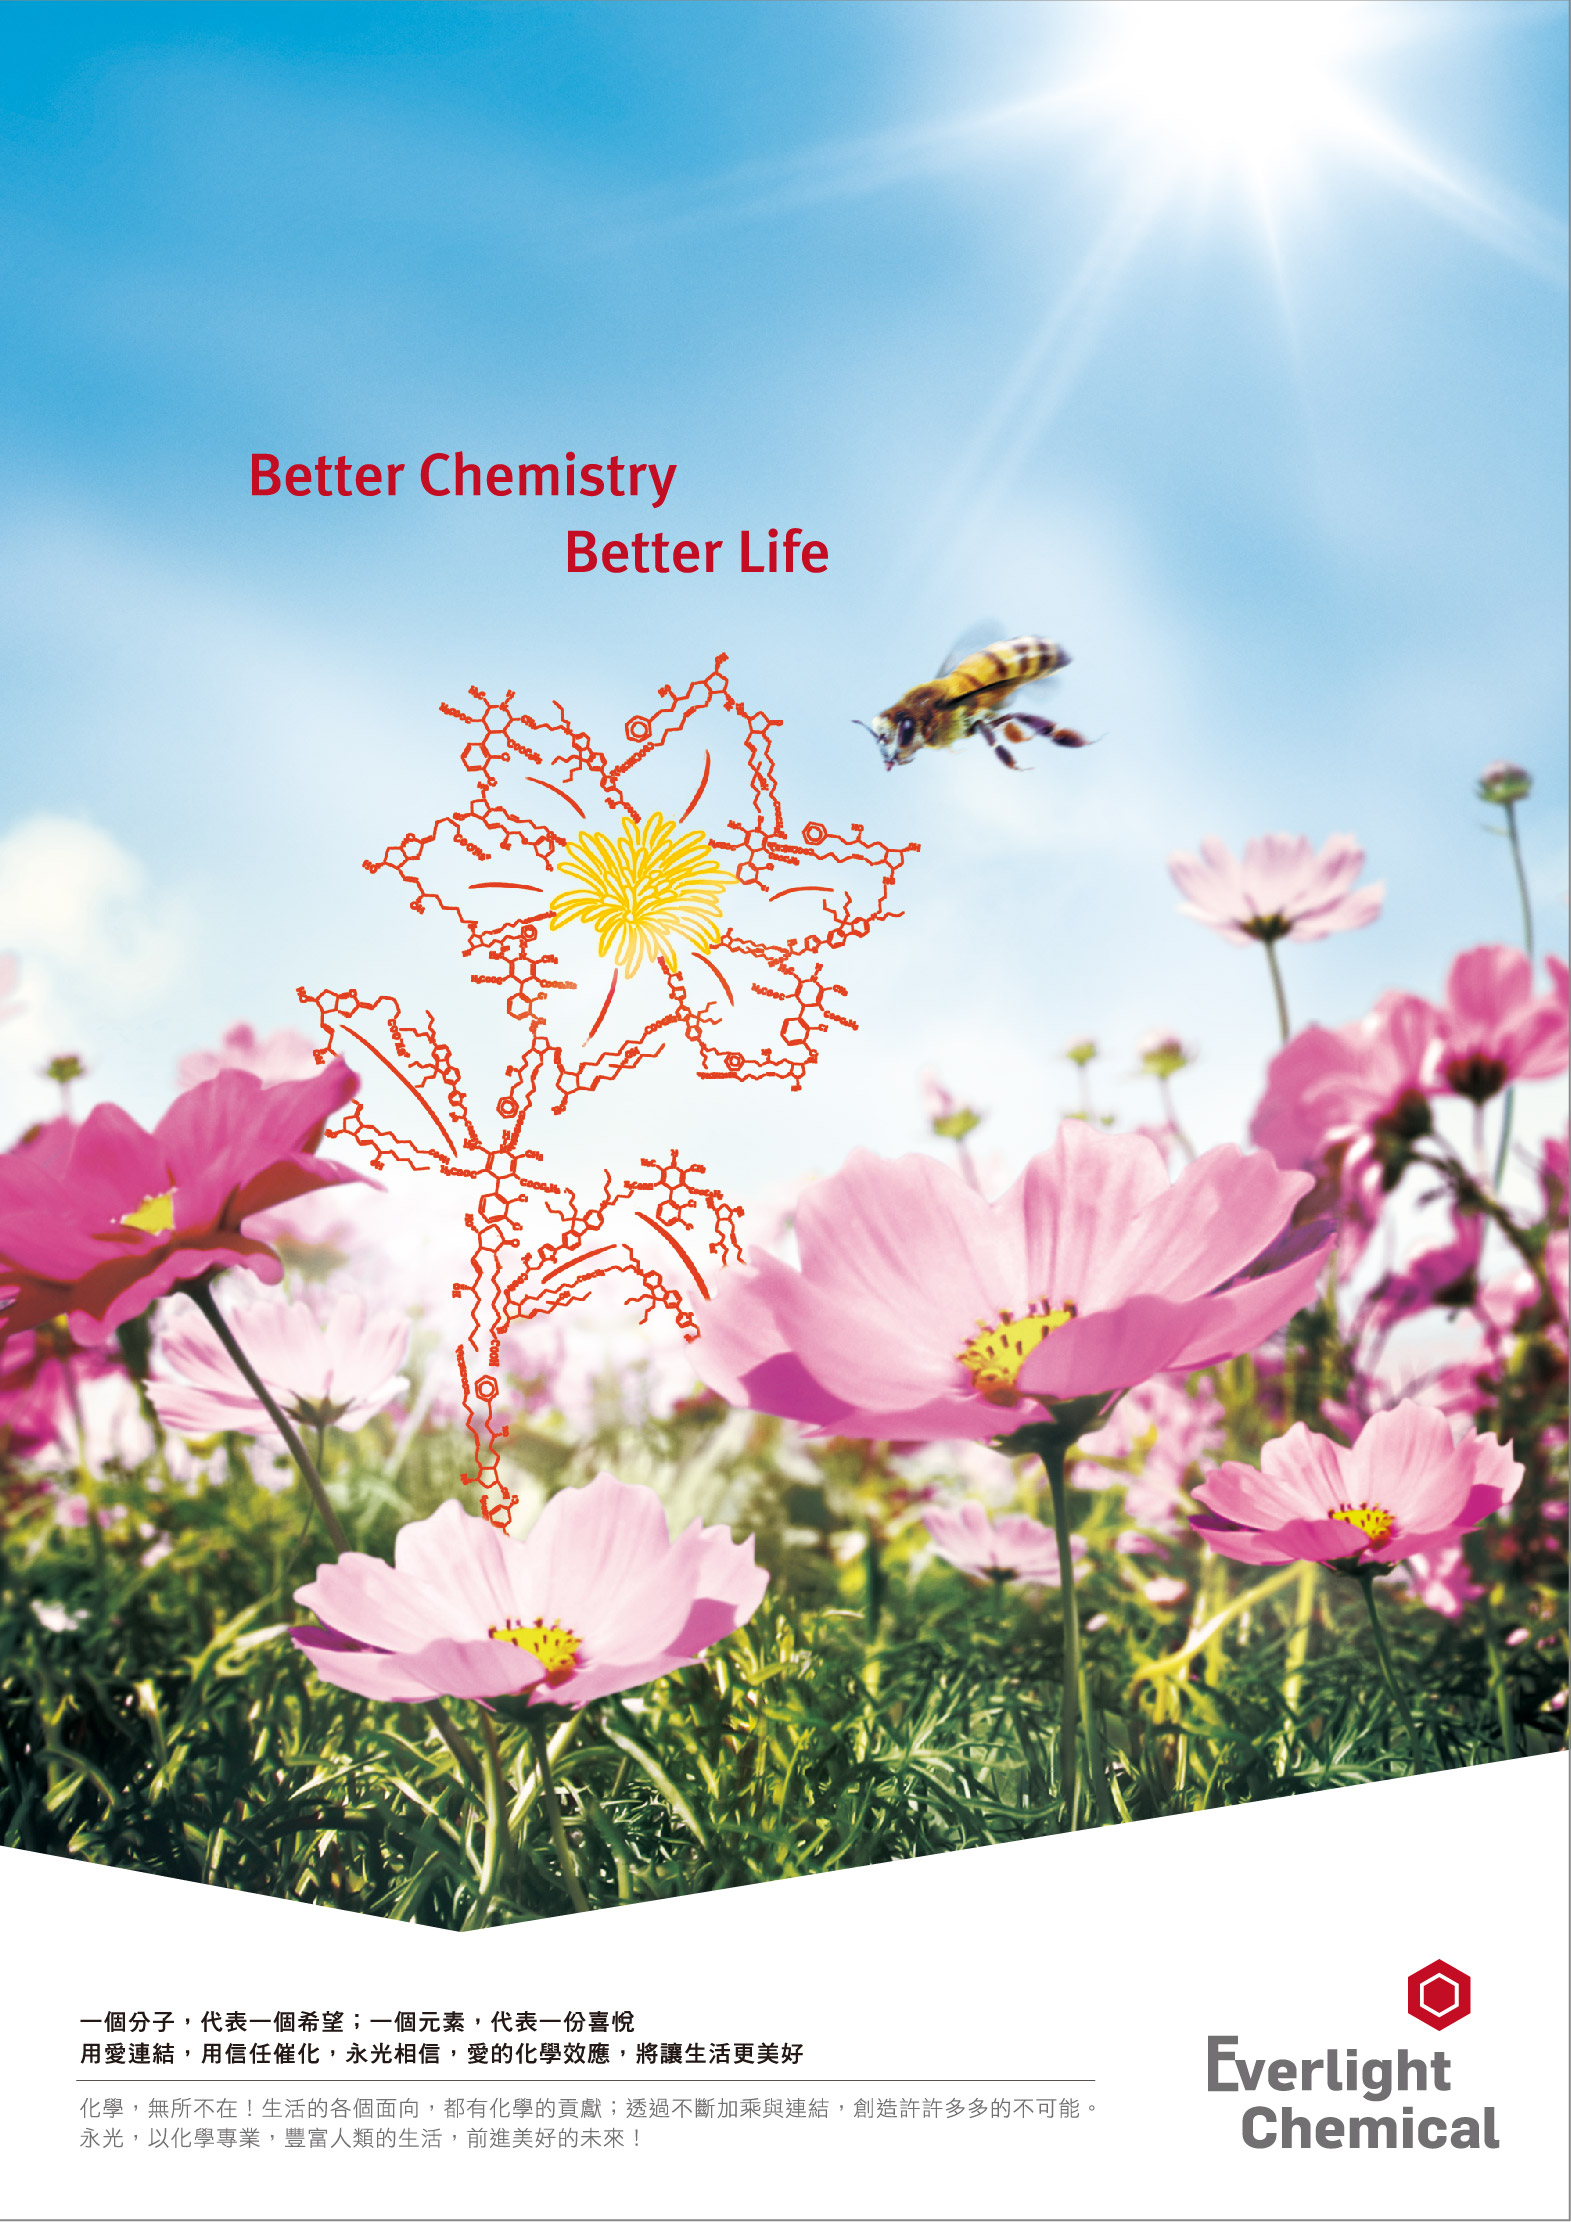 【永光化學】Better Chemistry Better Life圖片